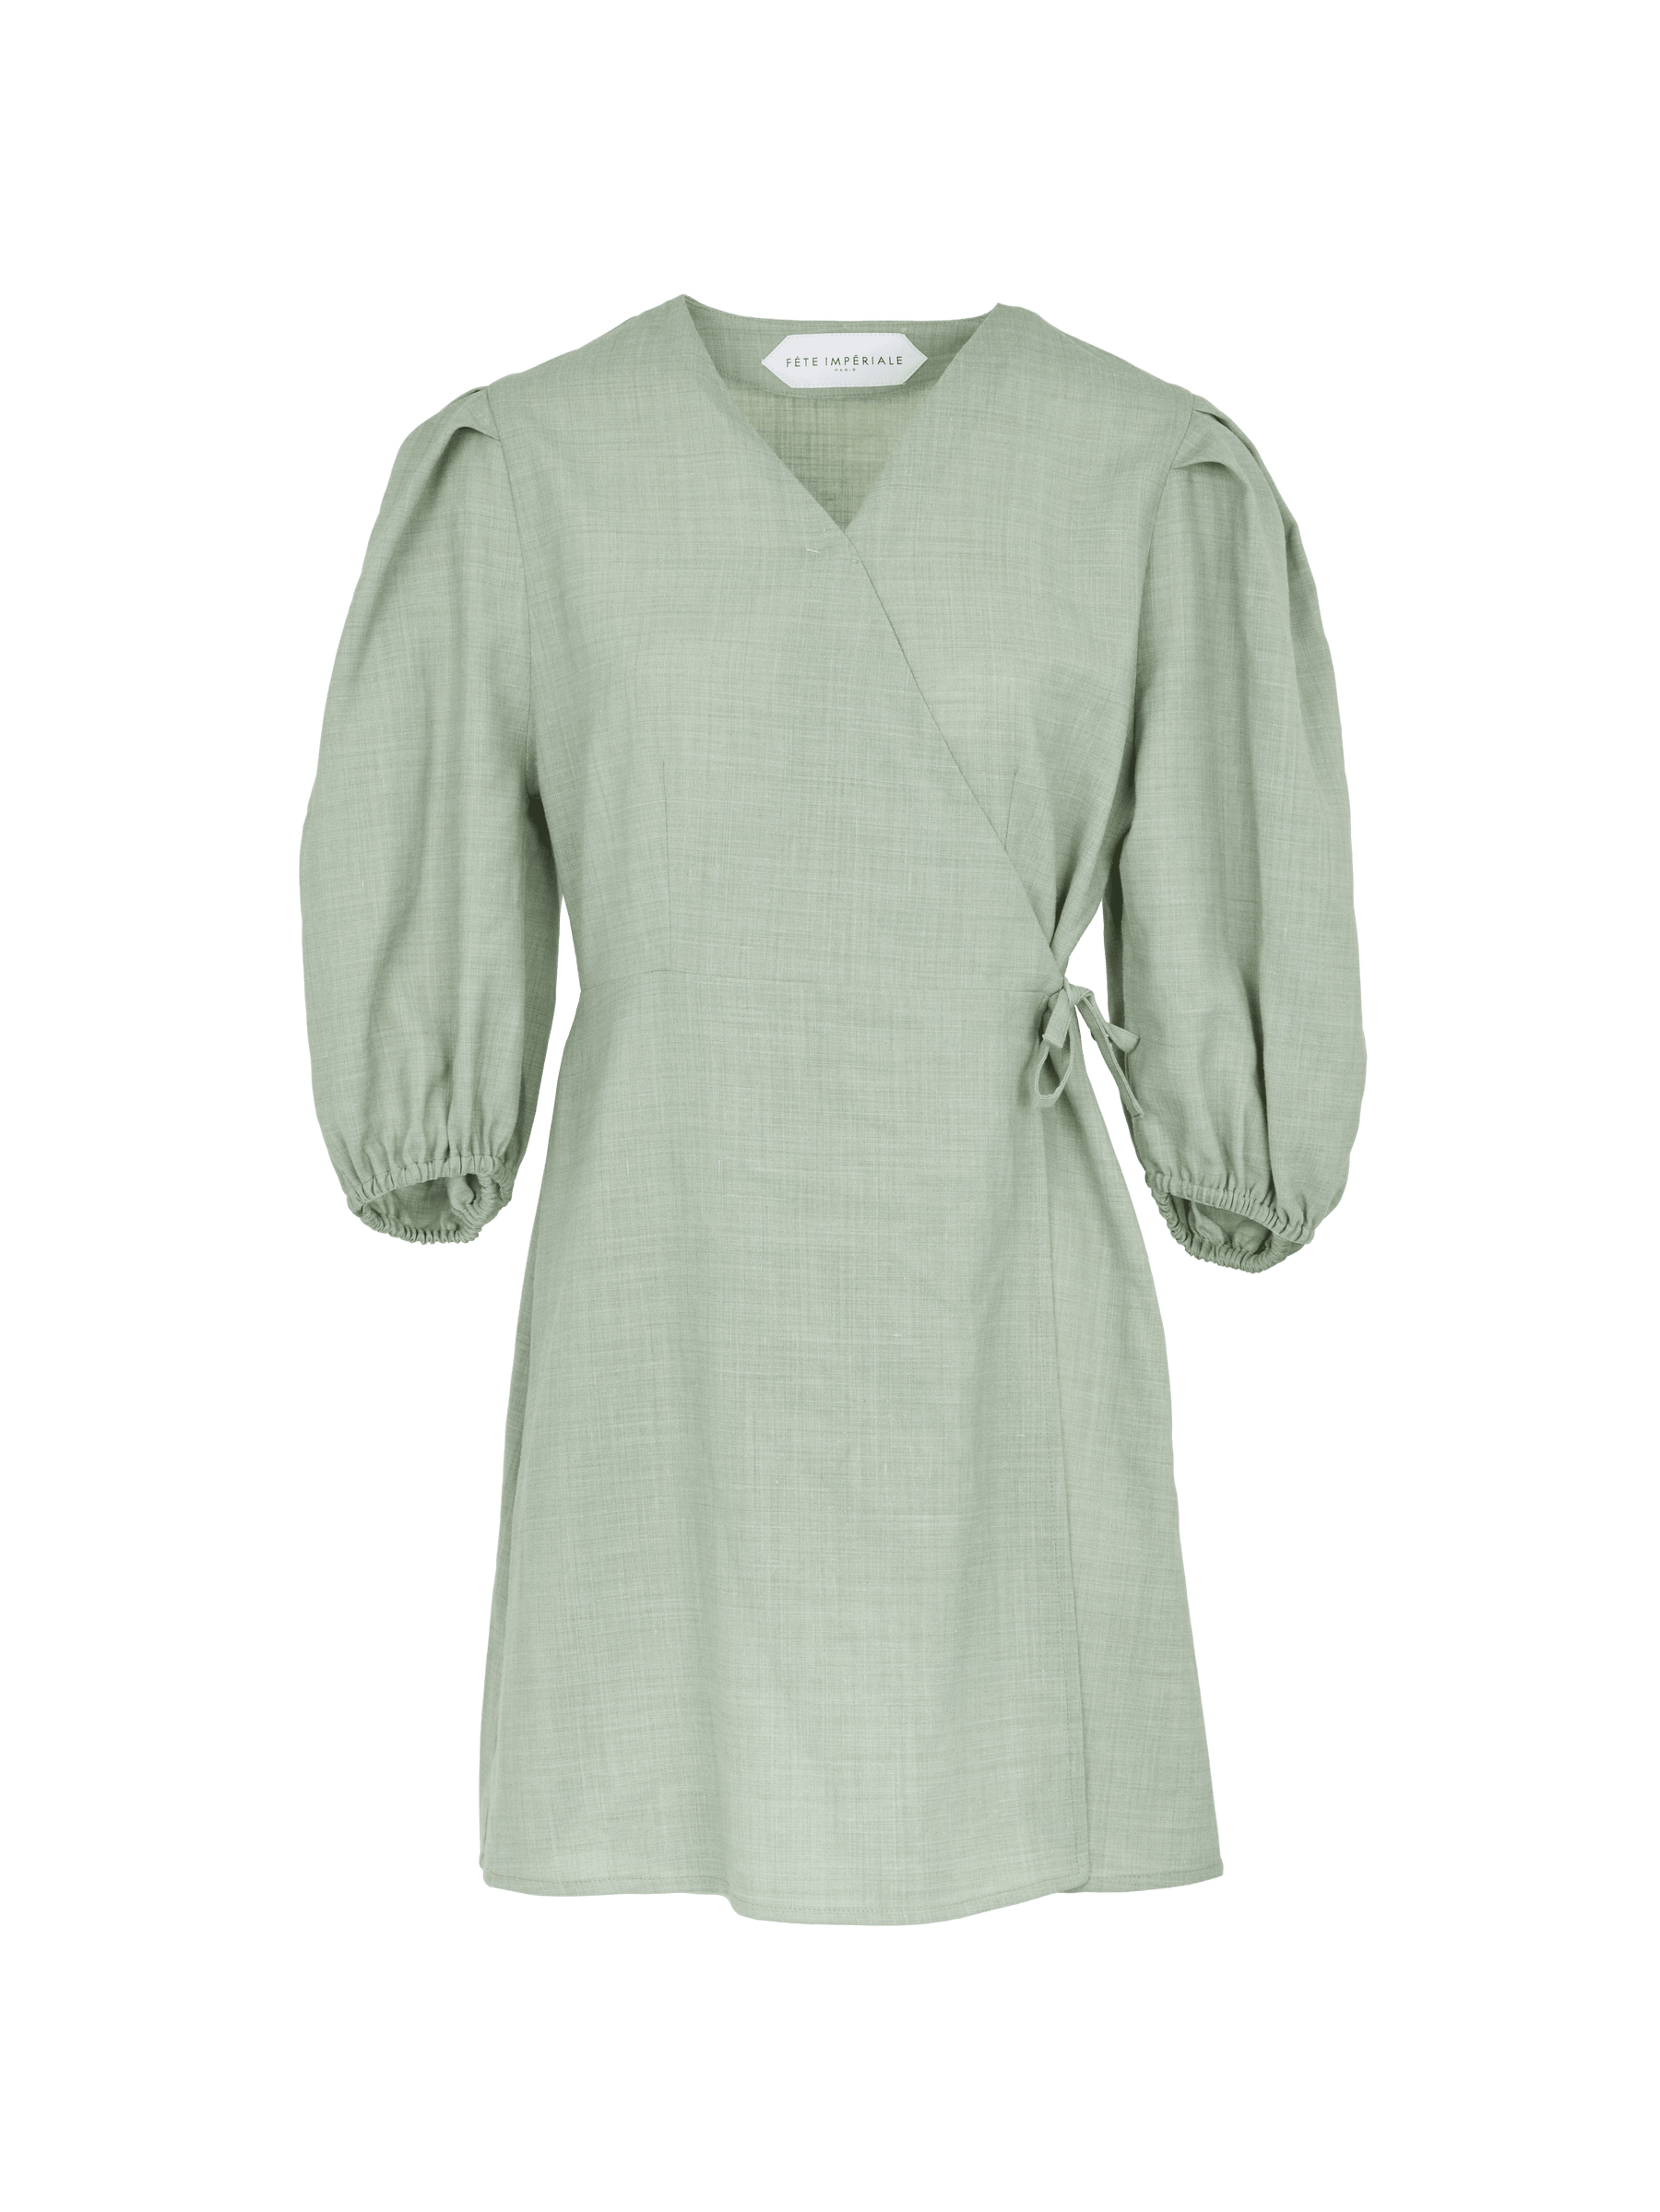 EURYDICE - Robe portefeuille courte à manches ballons en toile de coton Oeko-Tex vert céladon Robe Fête Impériale